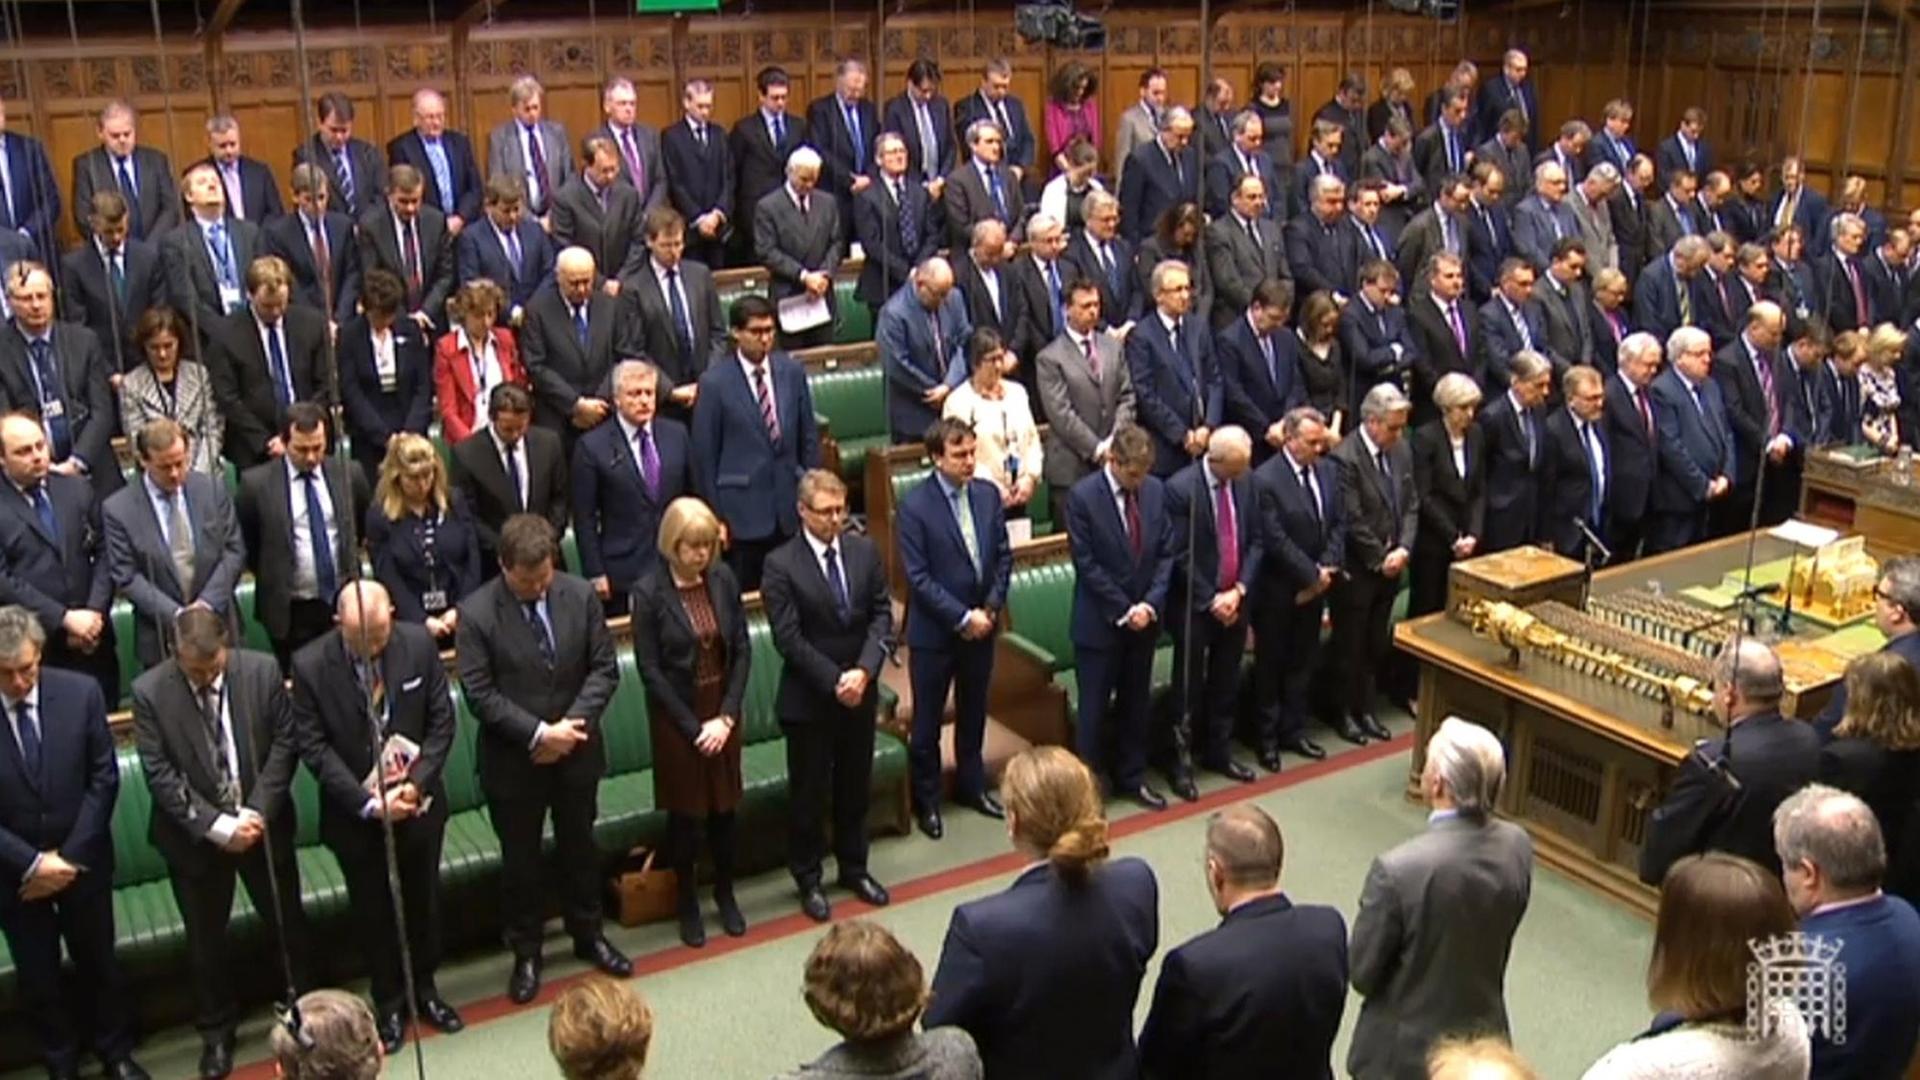 Die Mitglieder des britischen Parlaments stehen bei einer Schweigeminute am 23.03.2017 in London (Großbritannien) im Parlament.